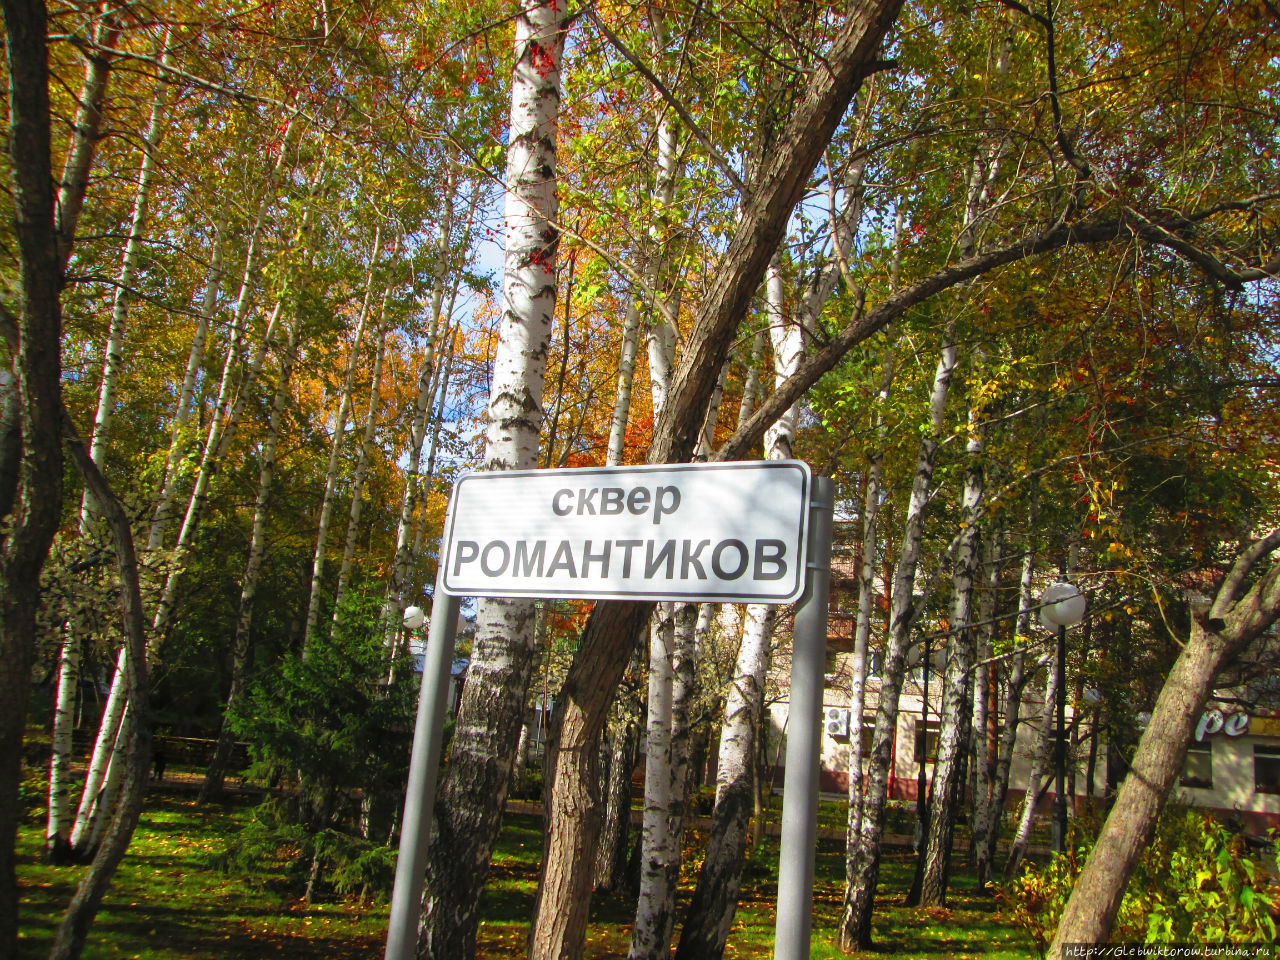 Две октябрьские прогулки по новому скверу Тюмень, Россия